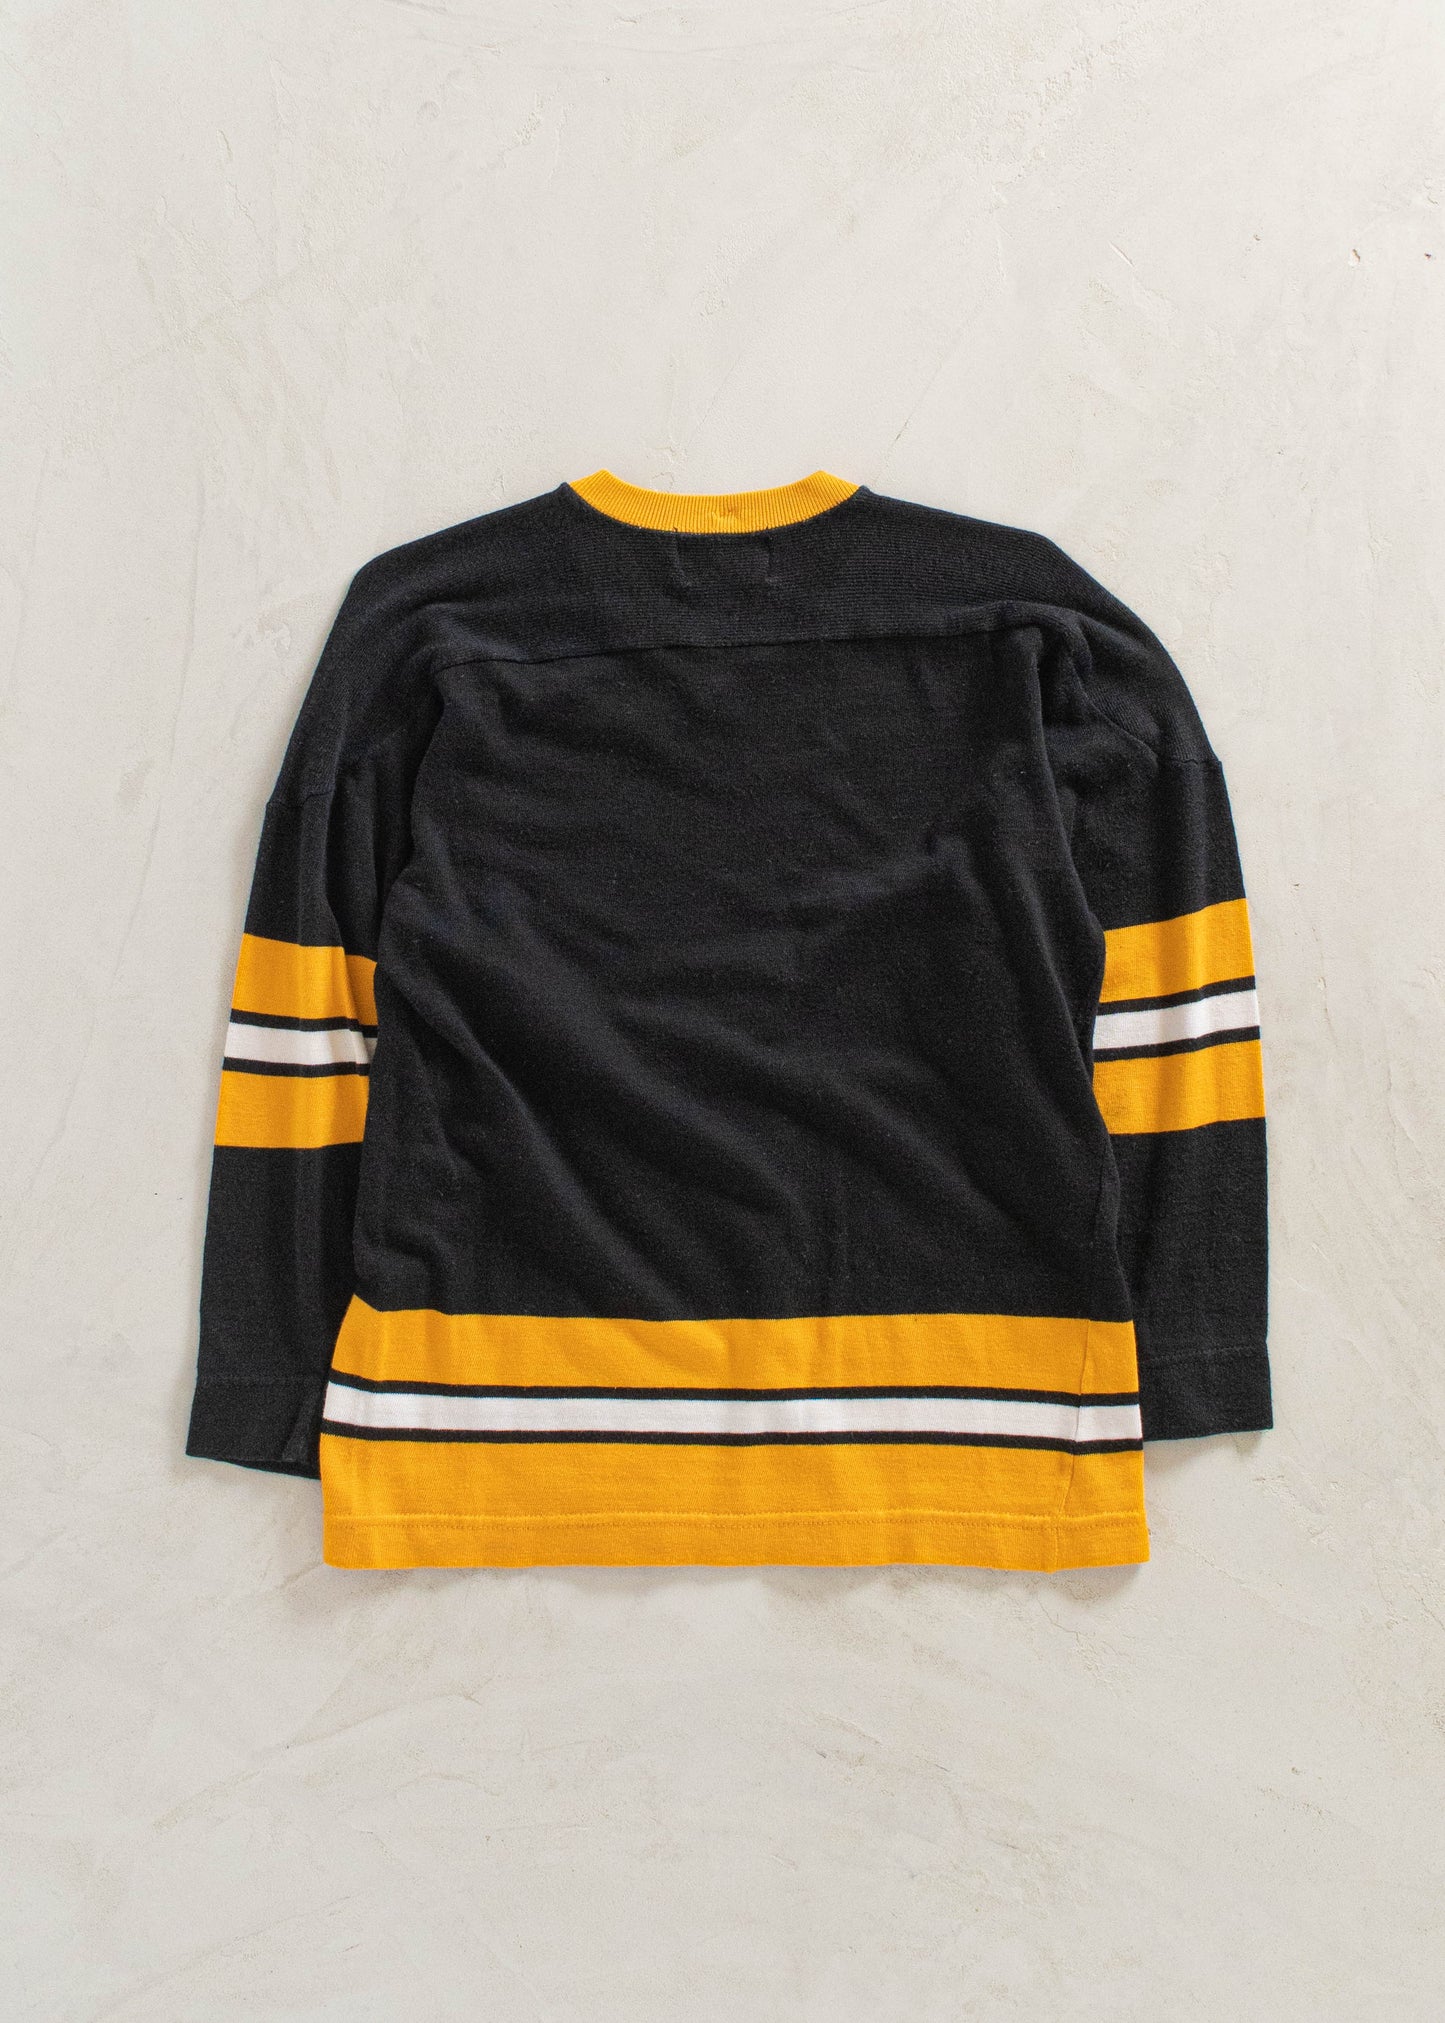 1980s Jaydee Knitters Ltd Long Sleeve Sport Jersey Size S/M